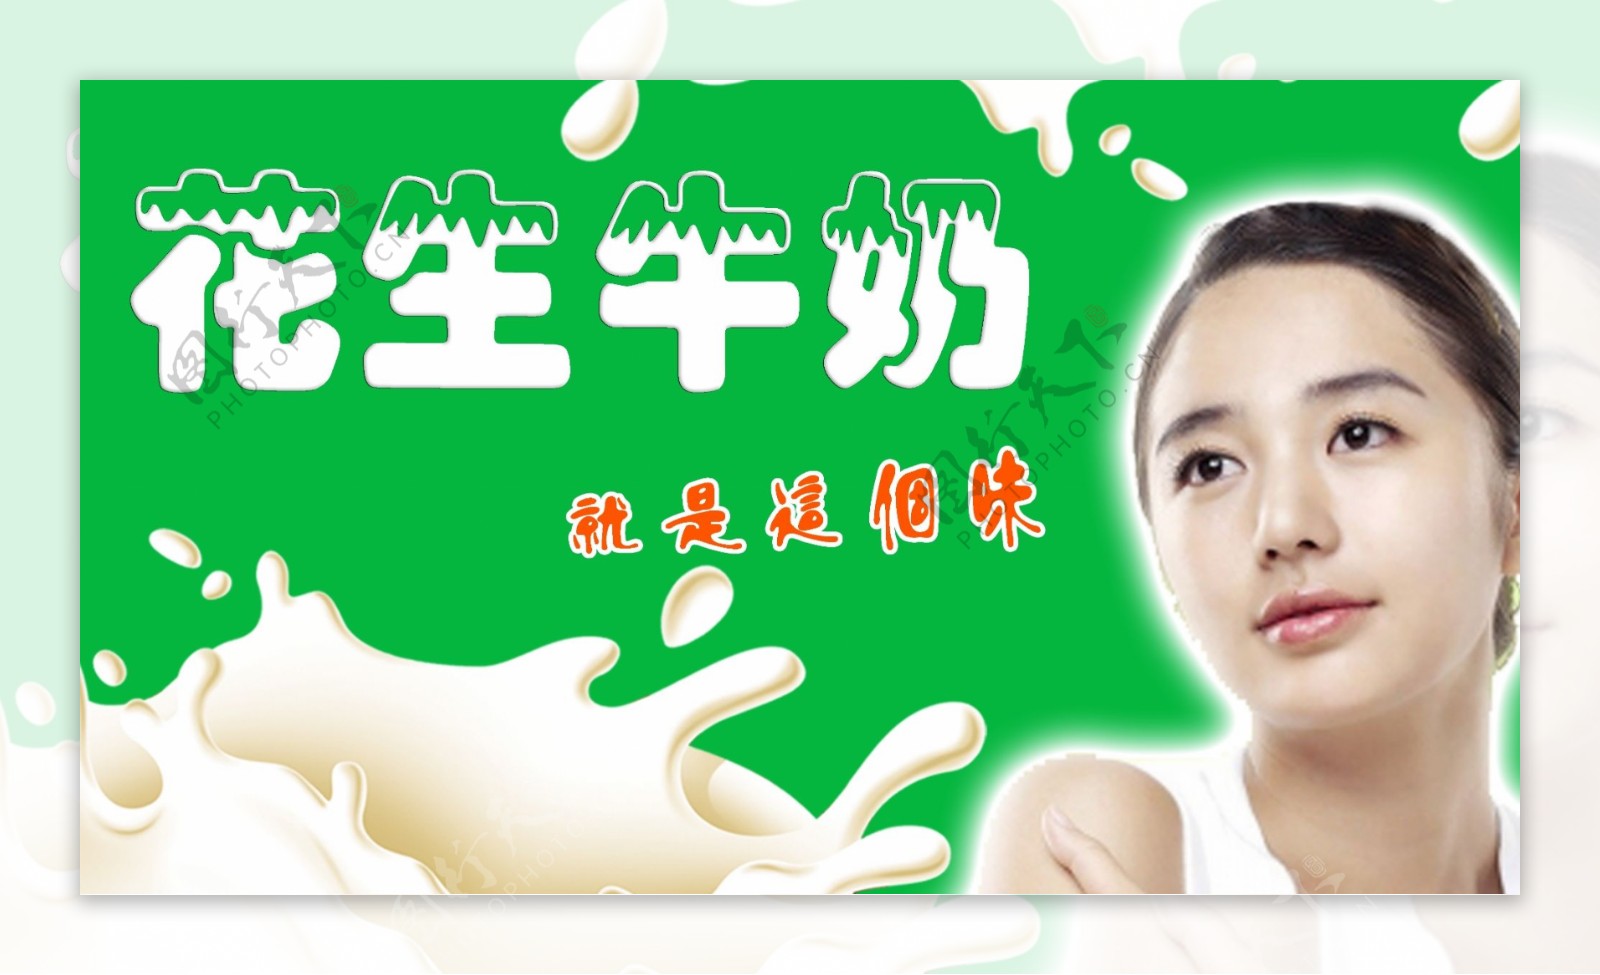 牛奶花生的广告图片